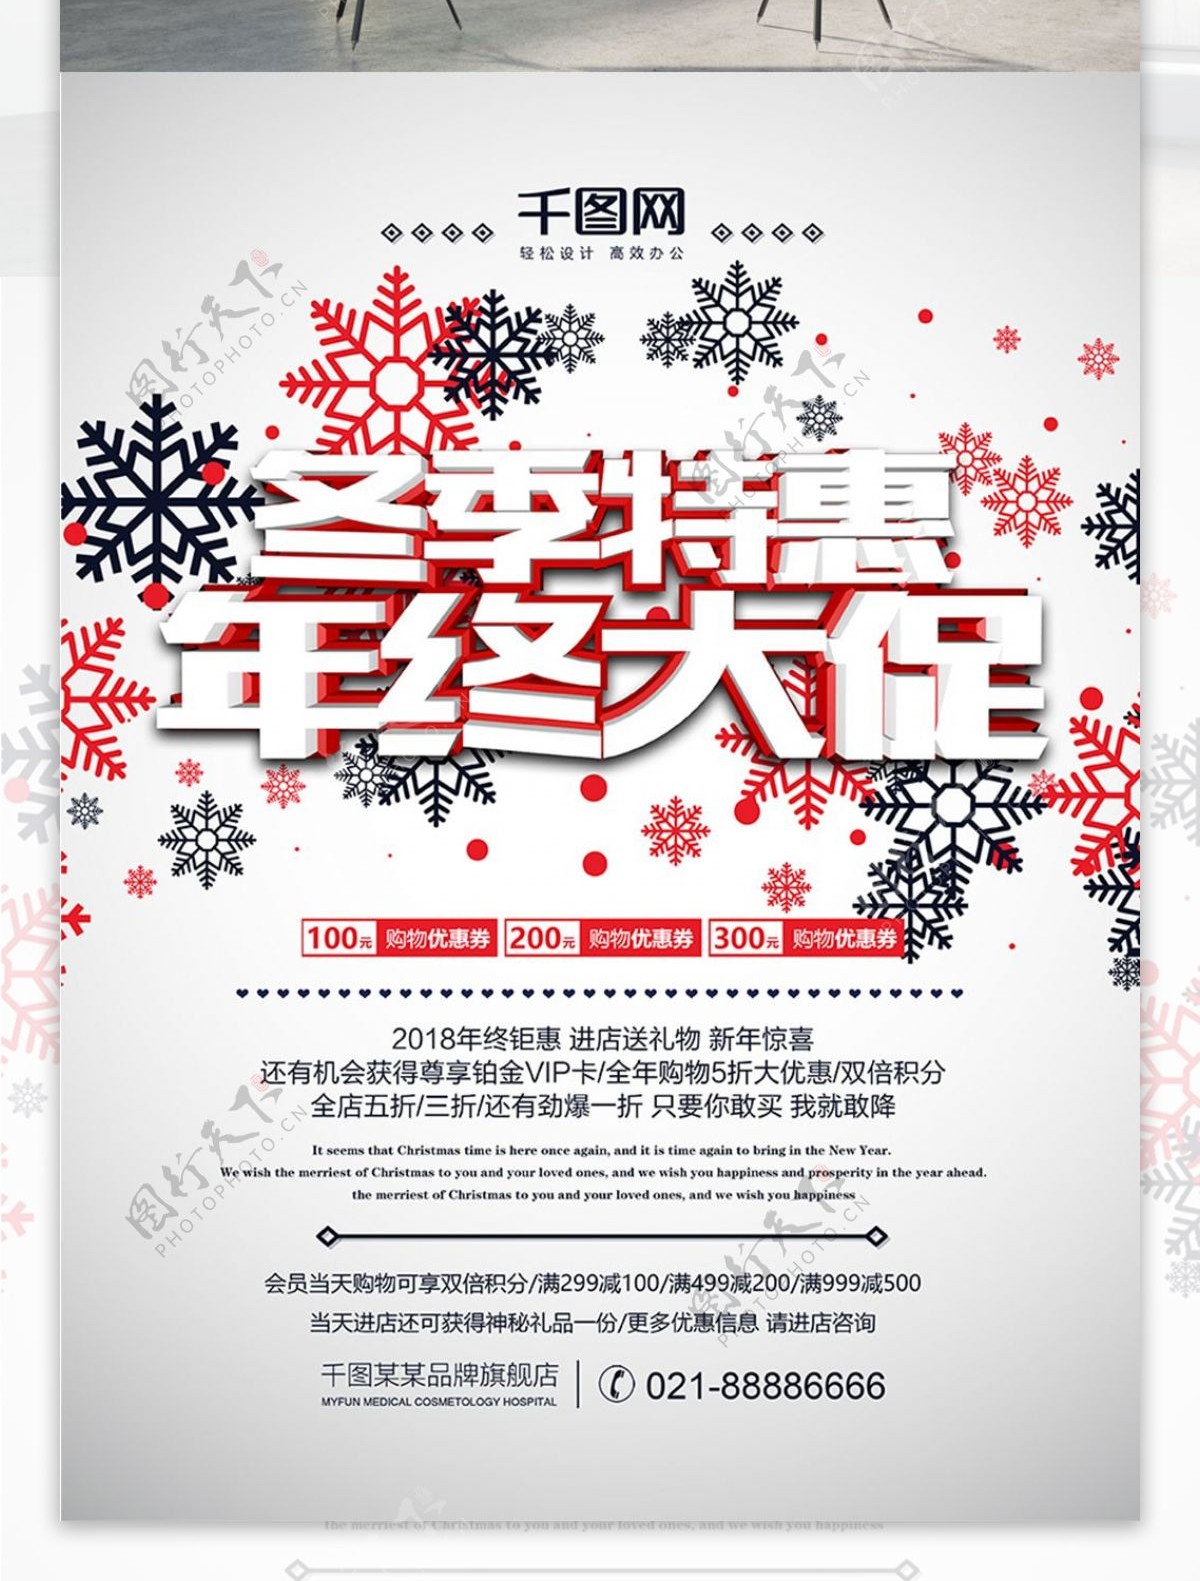 冬季特惠年终大促活动宣传海报PSD源文件